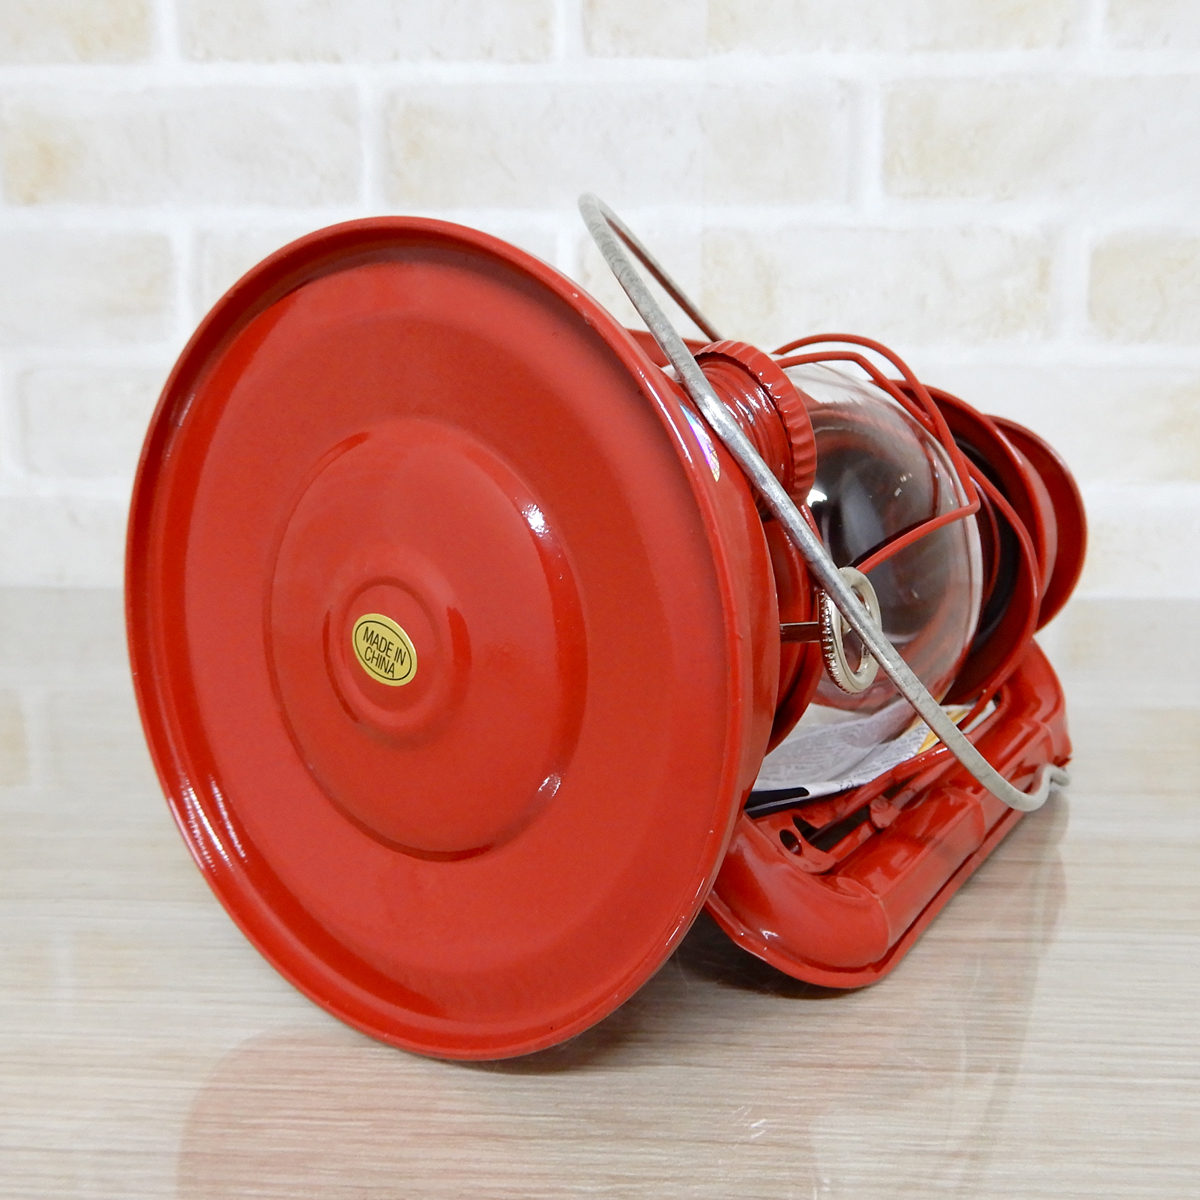 替芯2本付【送料無料】新品 Dietz #50 Comet Oil Lantern - Red 【廃盤】 ◇デイツ コメット レッド ハリケーンランタン 赤 新品未使用